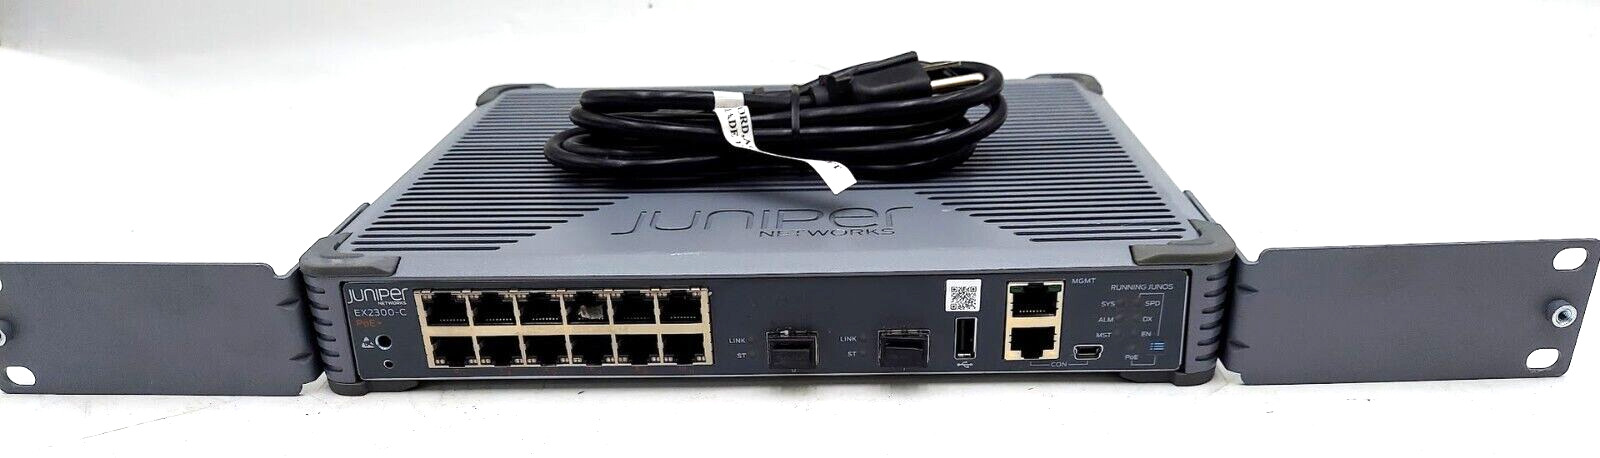 Juniper EX2300-C  12 Port POE Gigabit Ethernet Switch